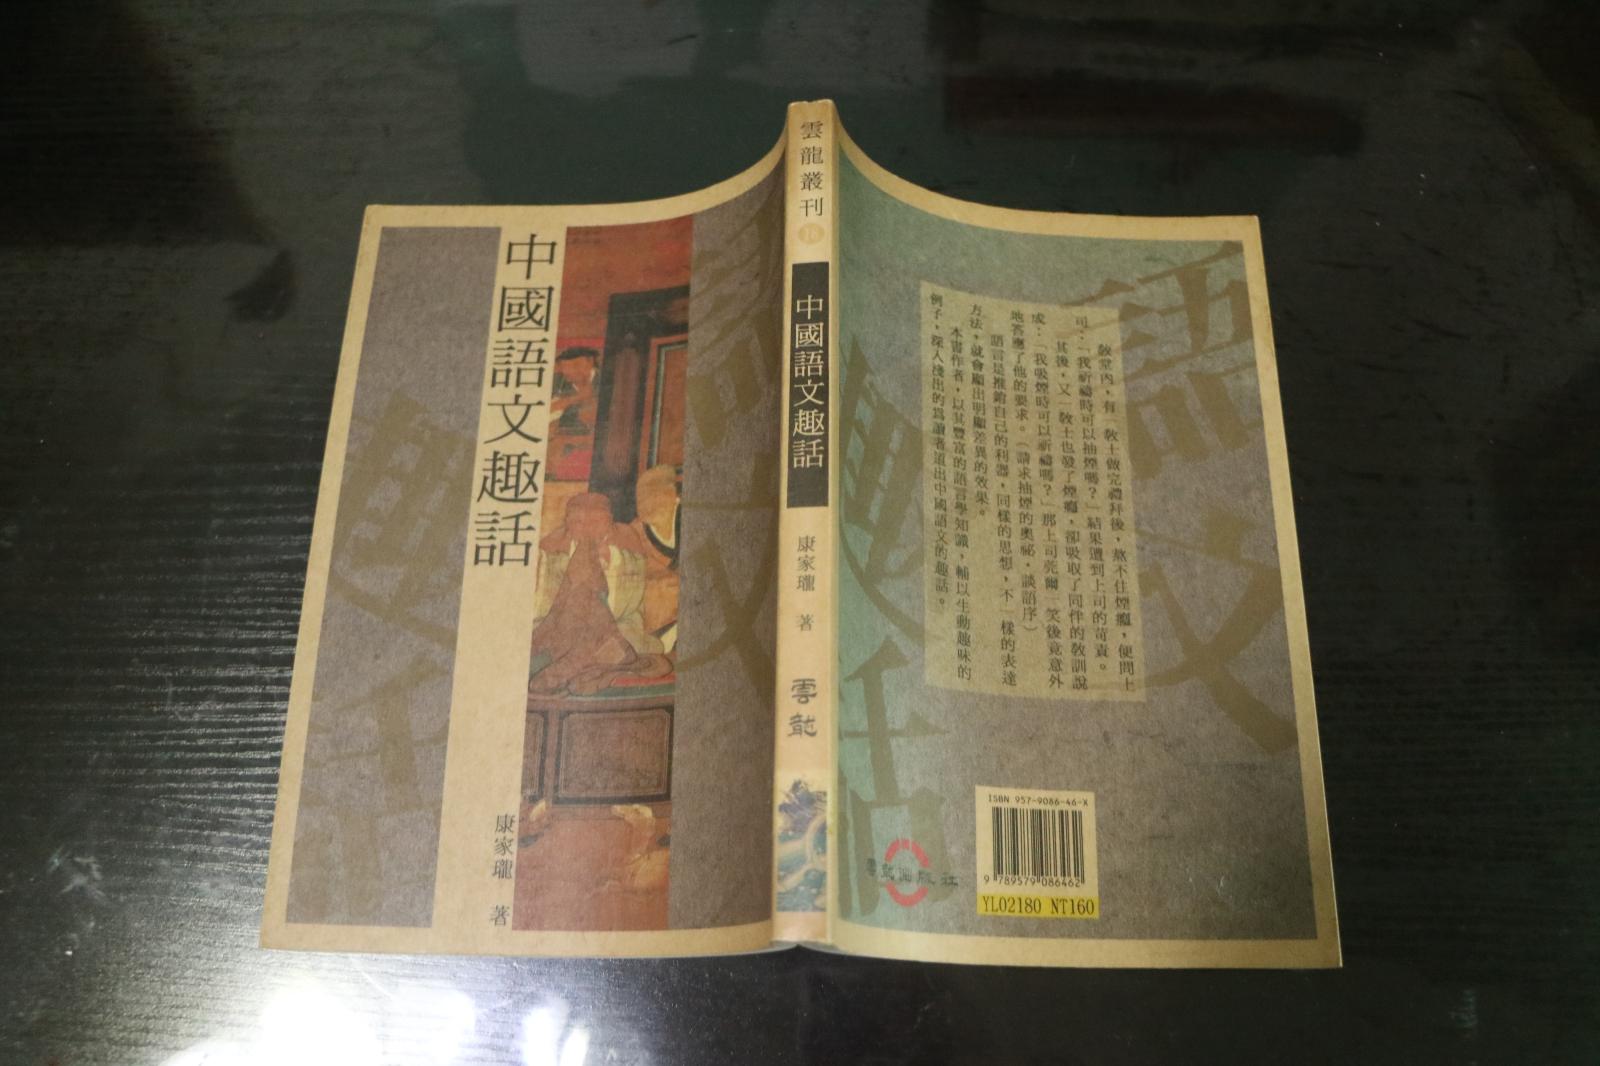 《中国语文趣话》 初版